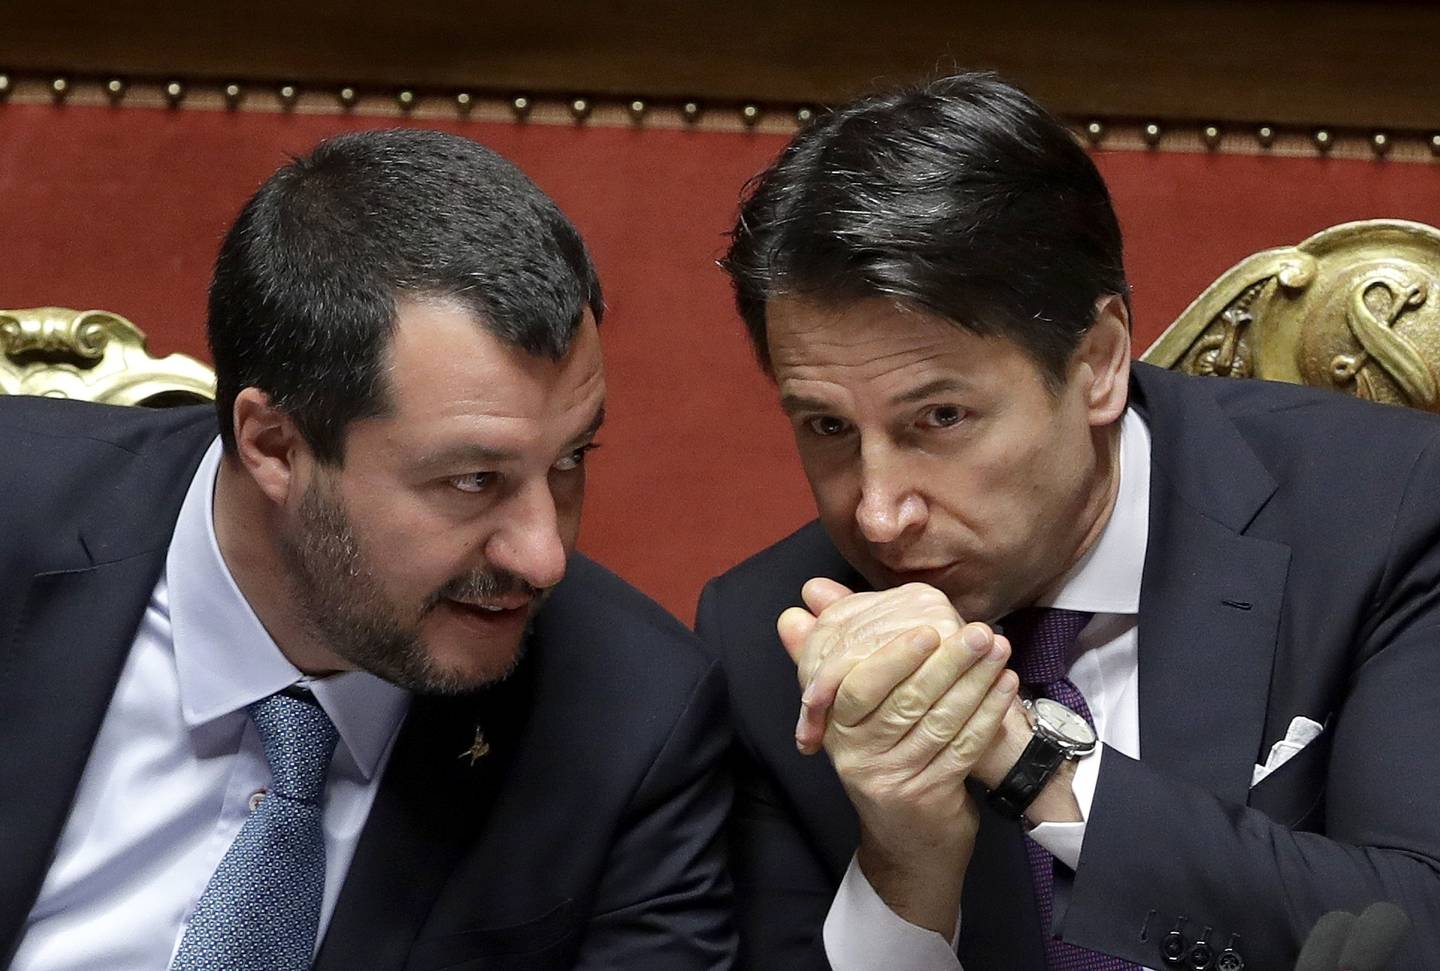 Den gang da: Daværende innenriksminister og visestatsminister Matteo Salvini fra Ligaen og statsminister Giuseppe Conte i 2019.